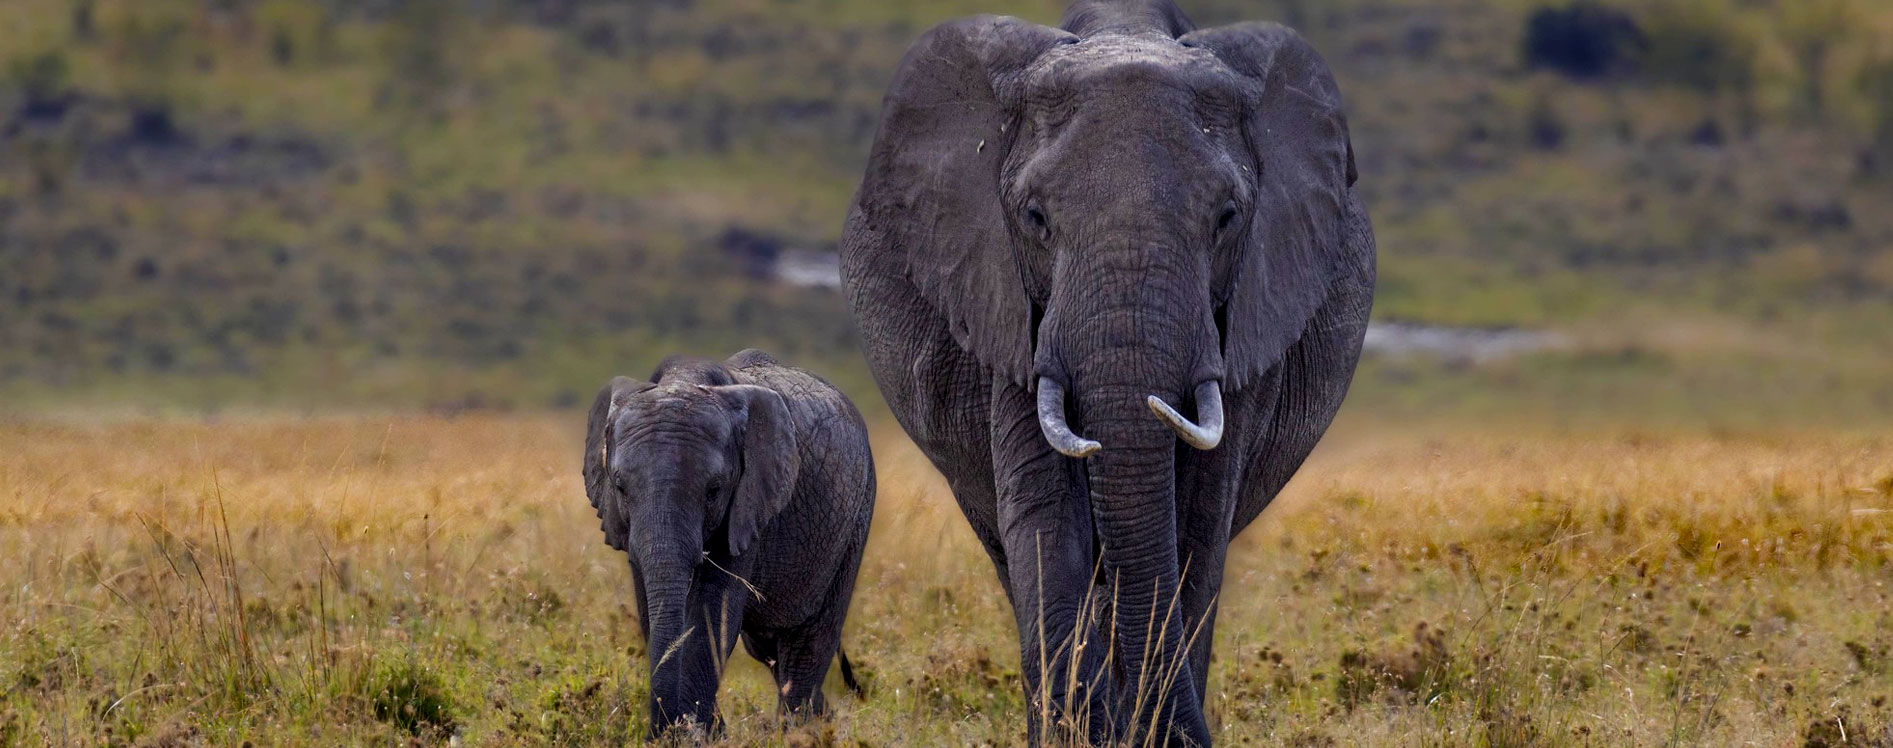 elephants-in-africa